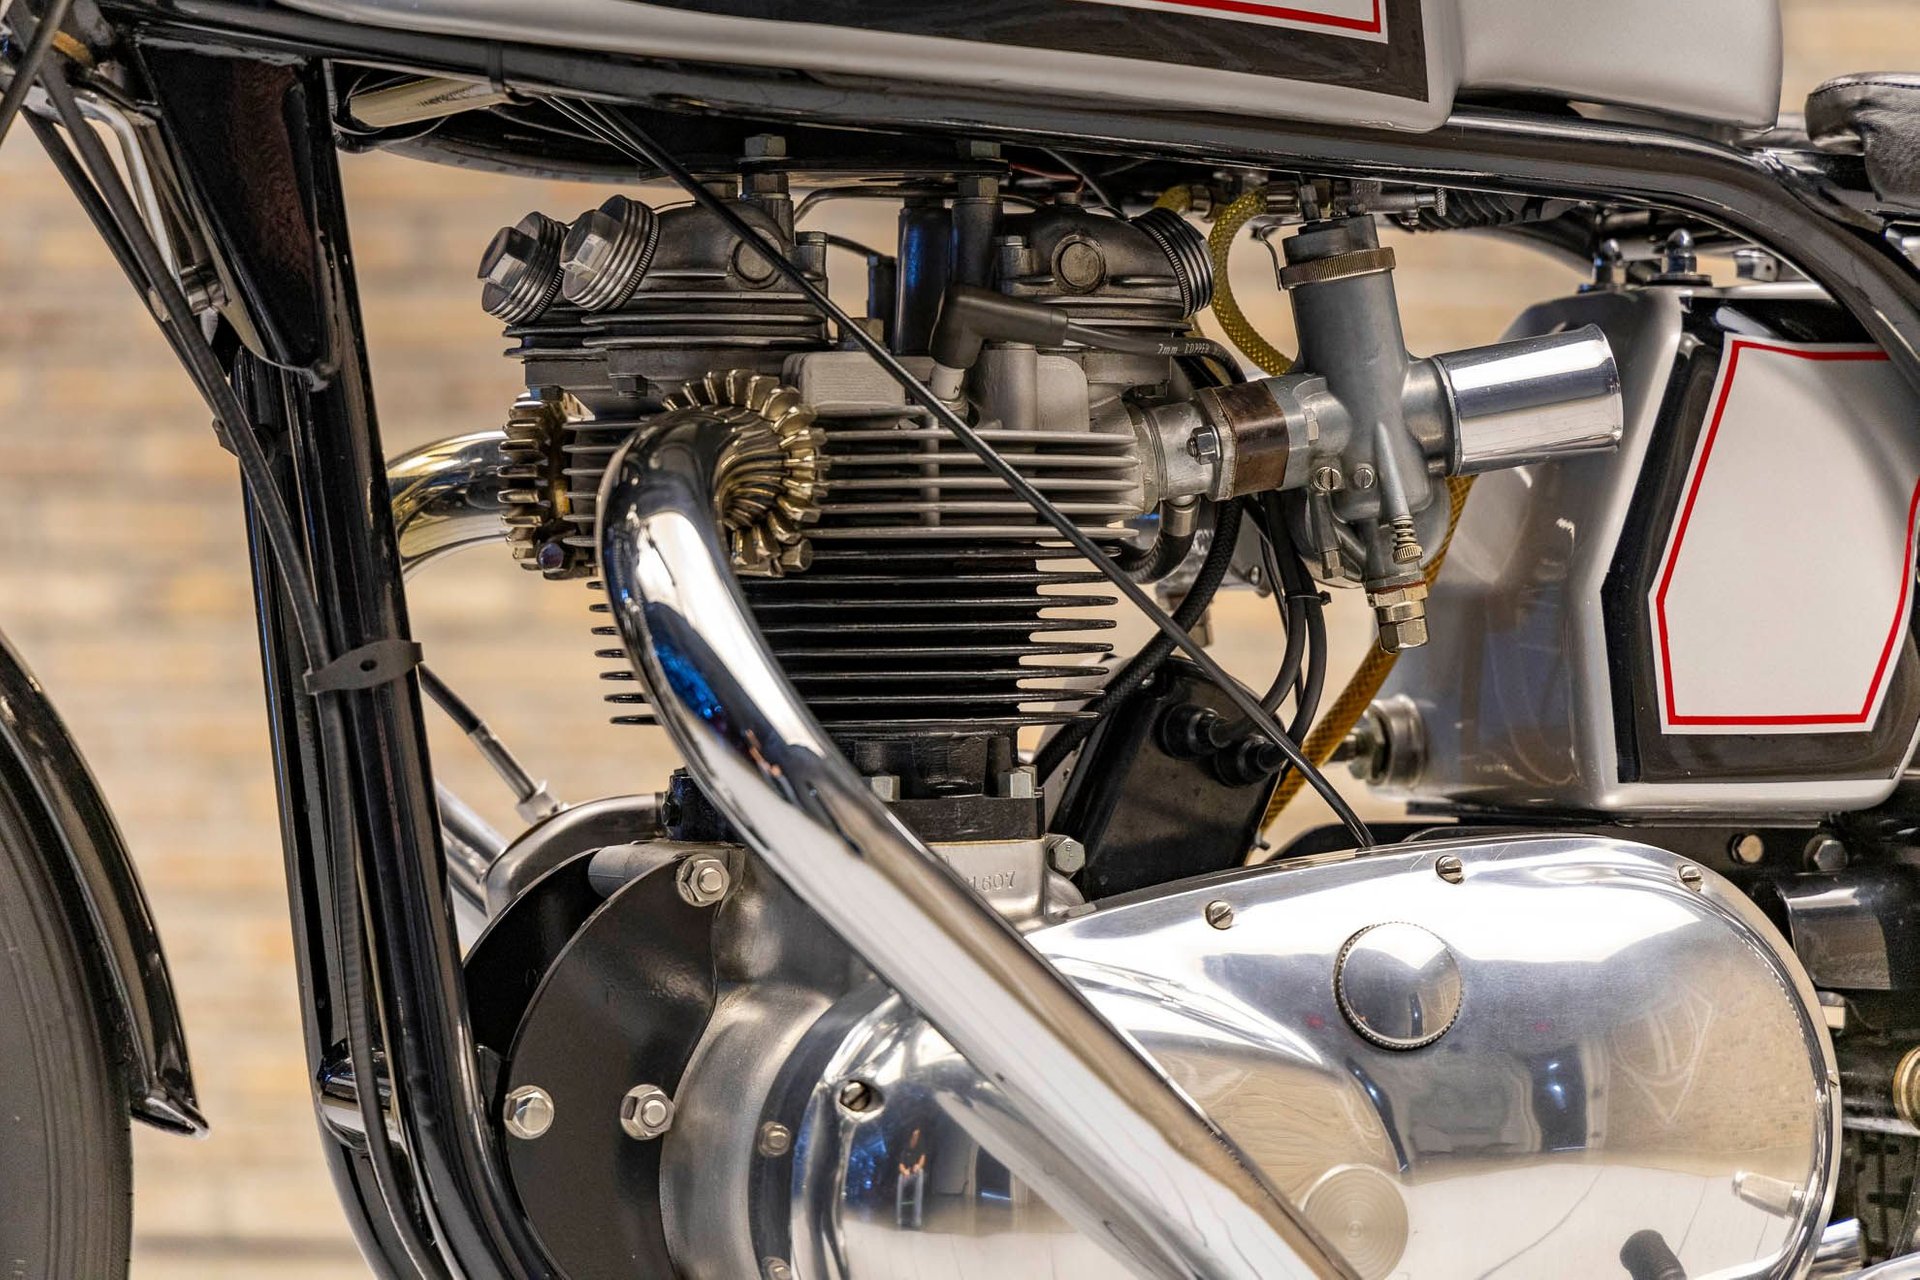 813452 | 1959 Triumph Bonneville T120 Triton | Throttlestop | Automotive and Motorcycle Consignment Dealer